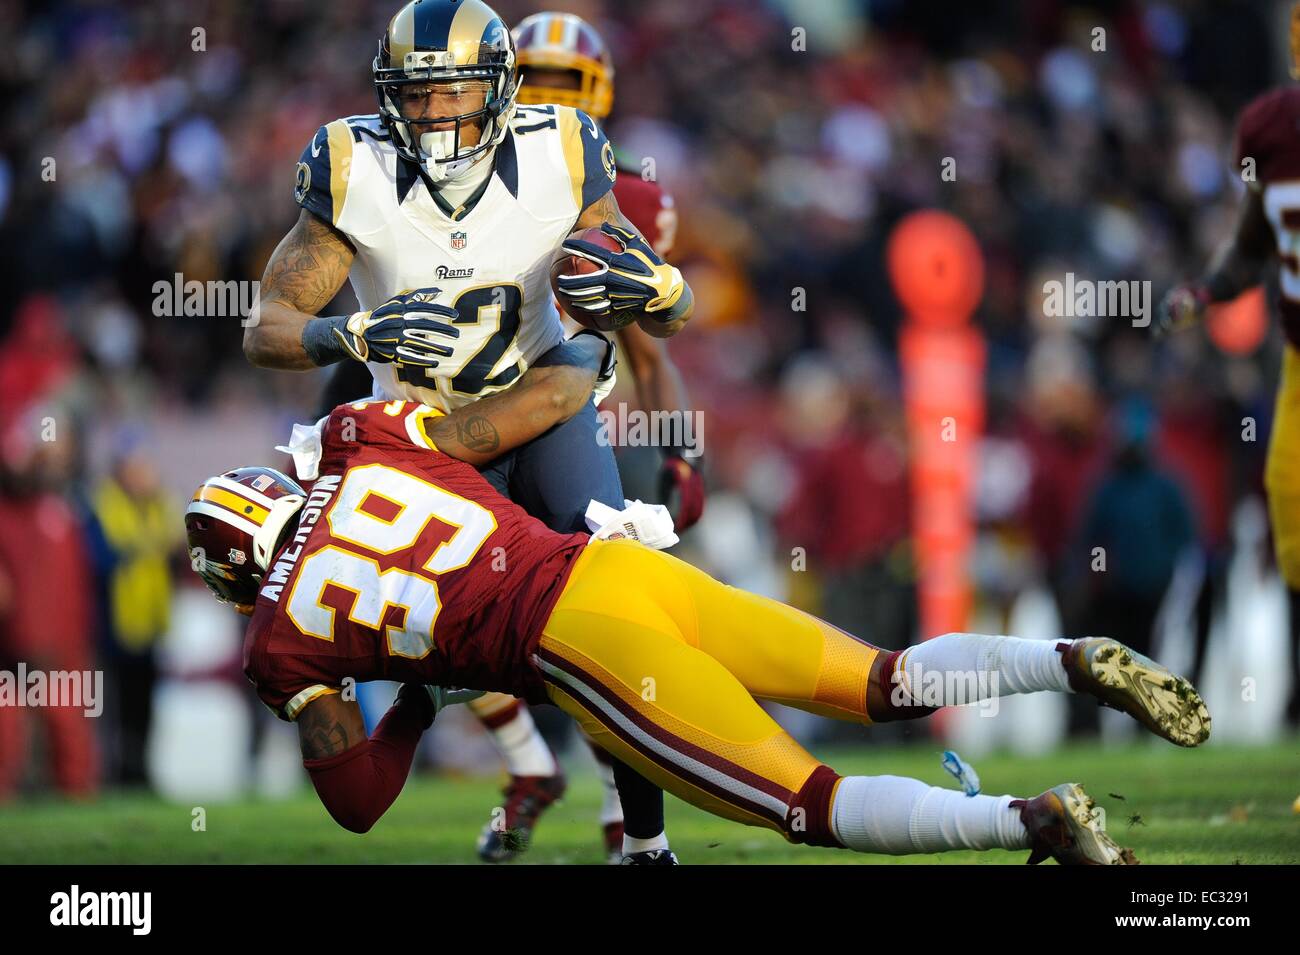 Déc 07, 2014 : Redskins de Washington David évoluait Amerson (39) tente de s'attaquer à Saint Louis Rams wide receiver Stedman Bailey (12) au cours de la se rencontreront entre les St Louis Rams et les Redskins de Washington à FedEx Field à Landover, MD. Banque D'Images